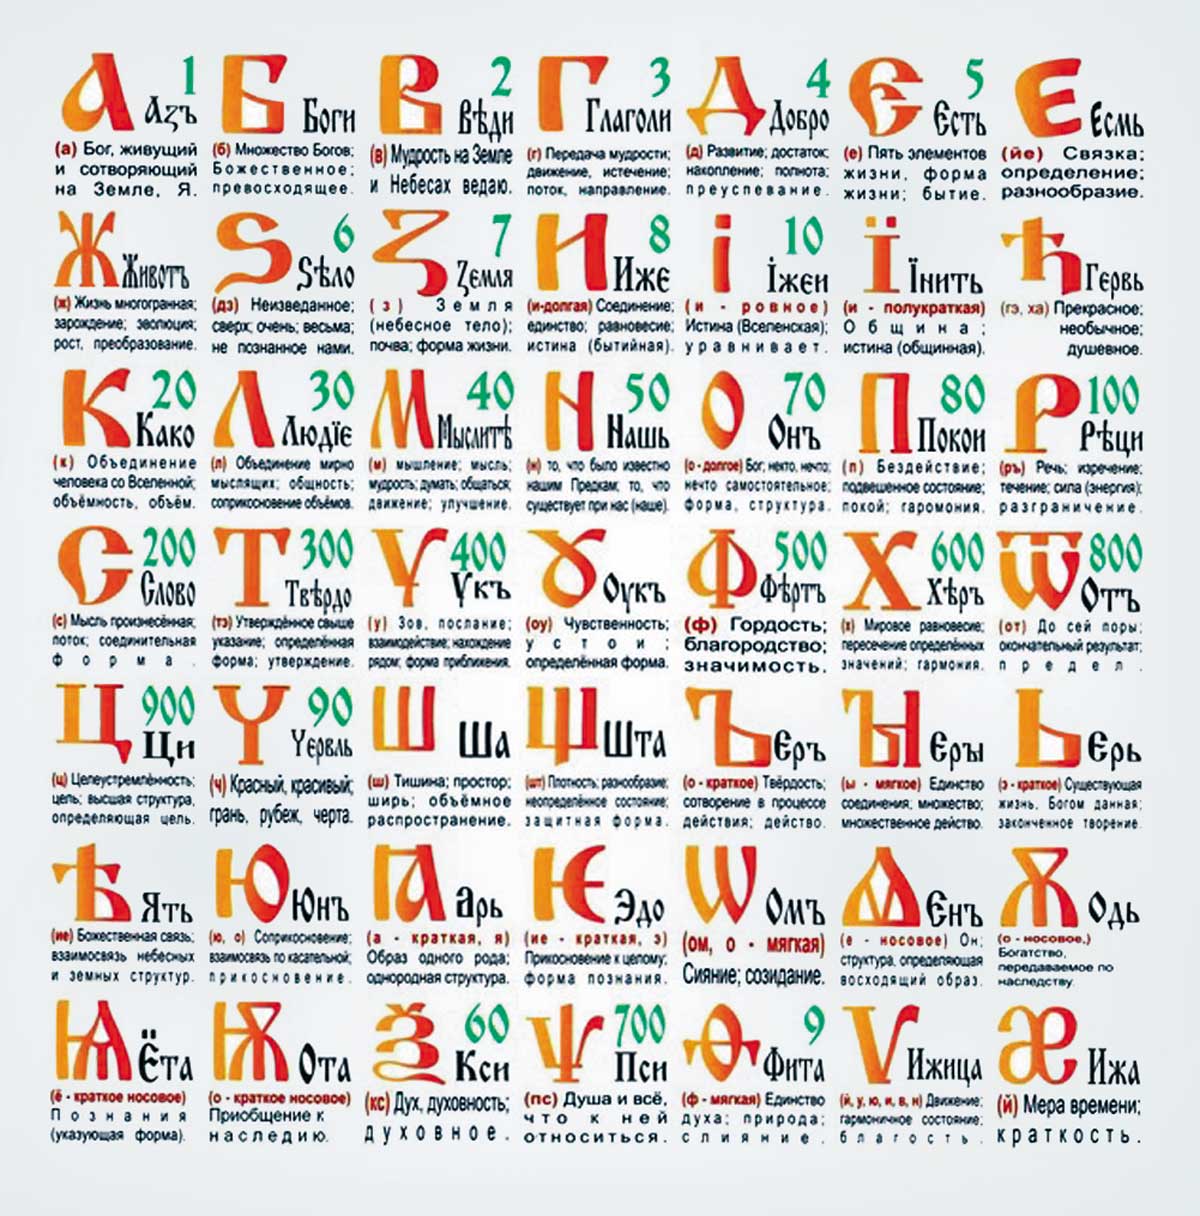 История упрощения славянской азбуки (1)